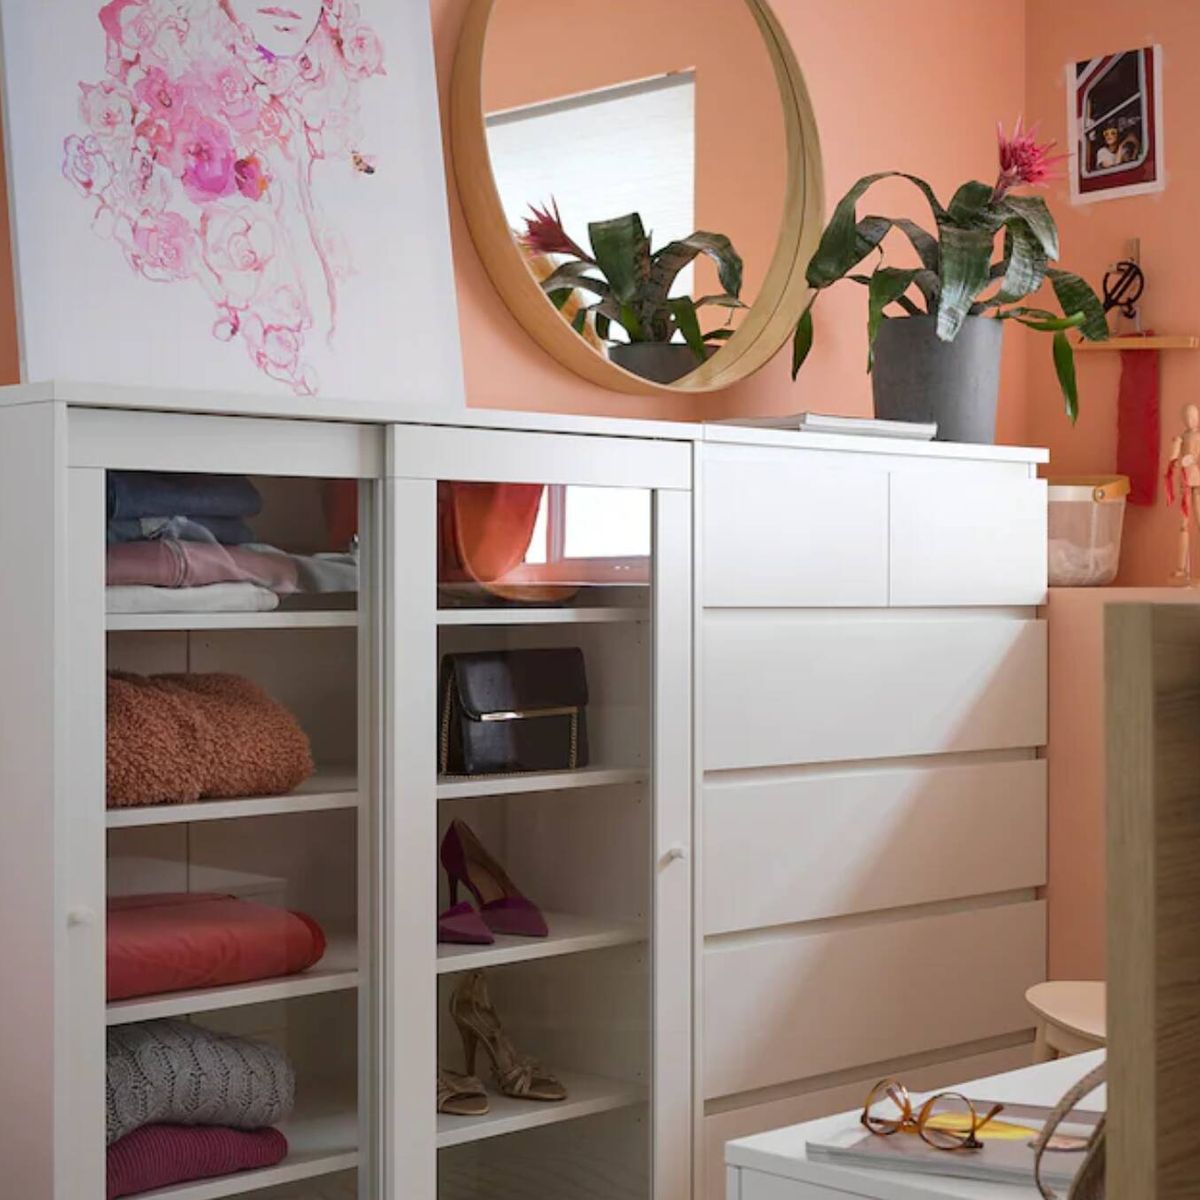 El mueble perfecto para salón, que podrás en dormitorio, es este de Ikea